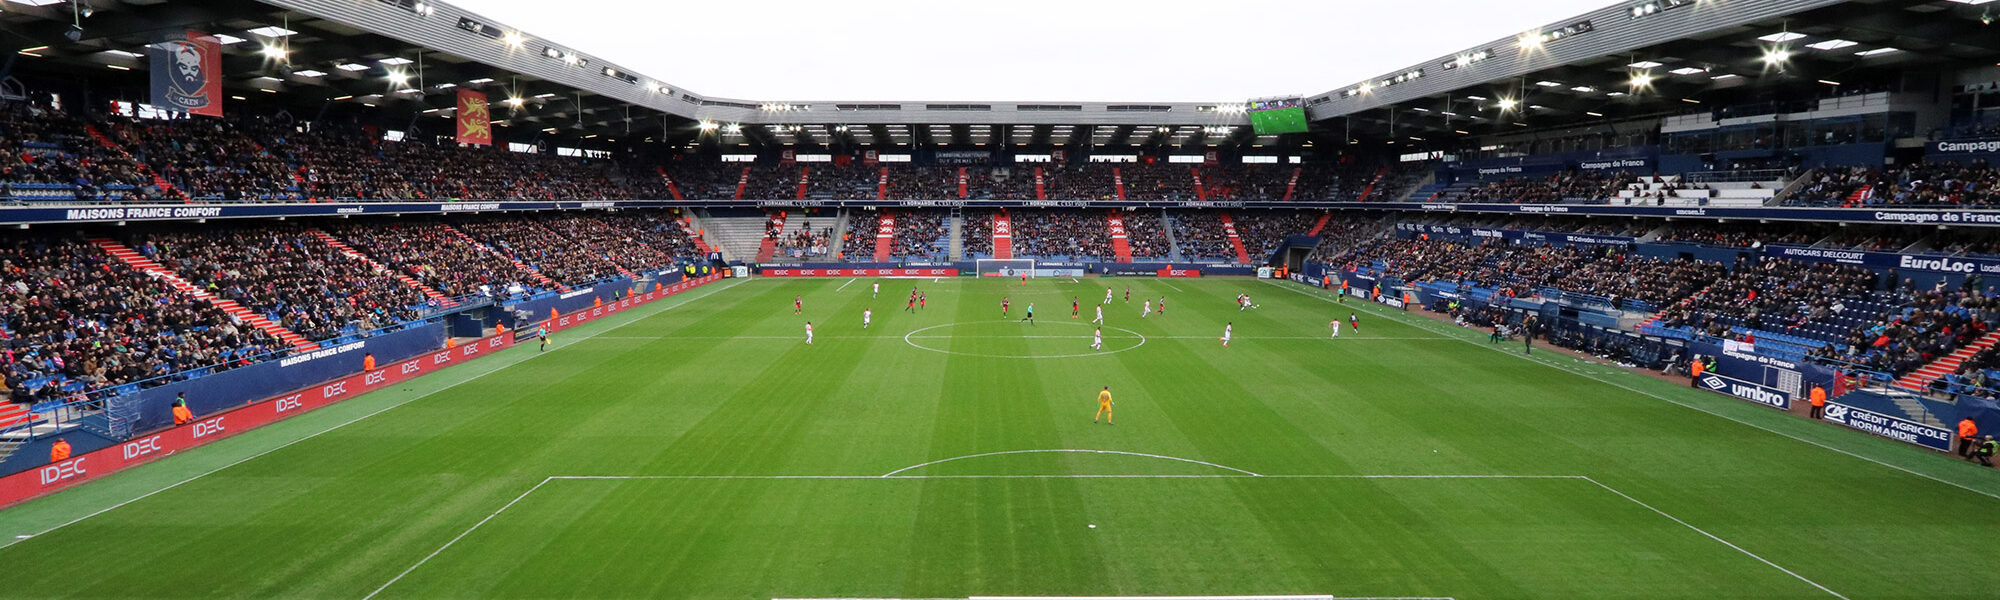 Voetbalwedstrijd van SM Caen bezoeken